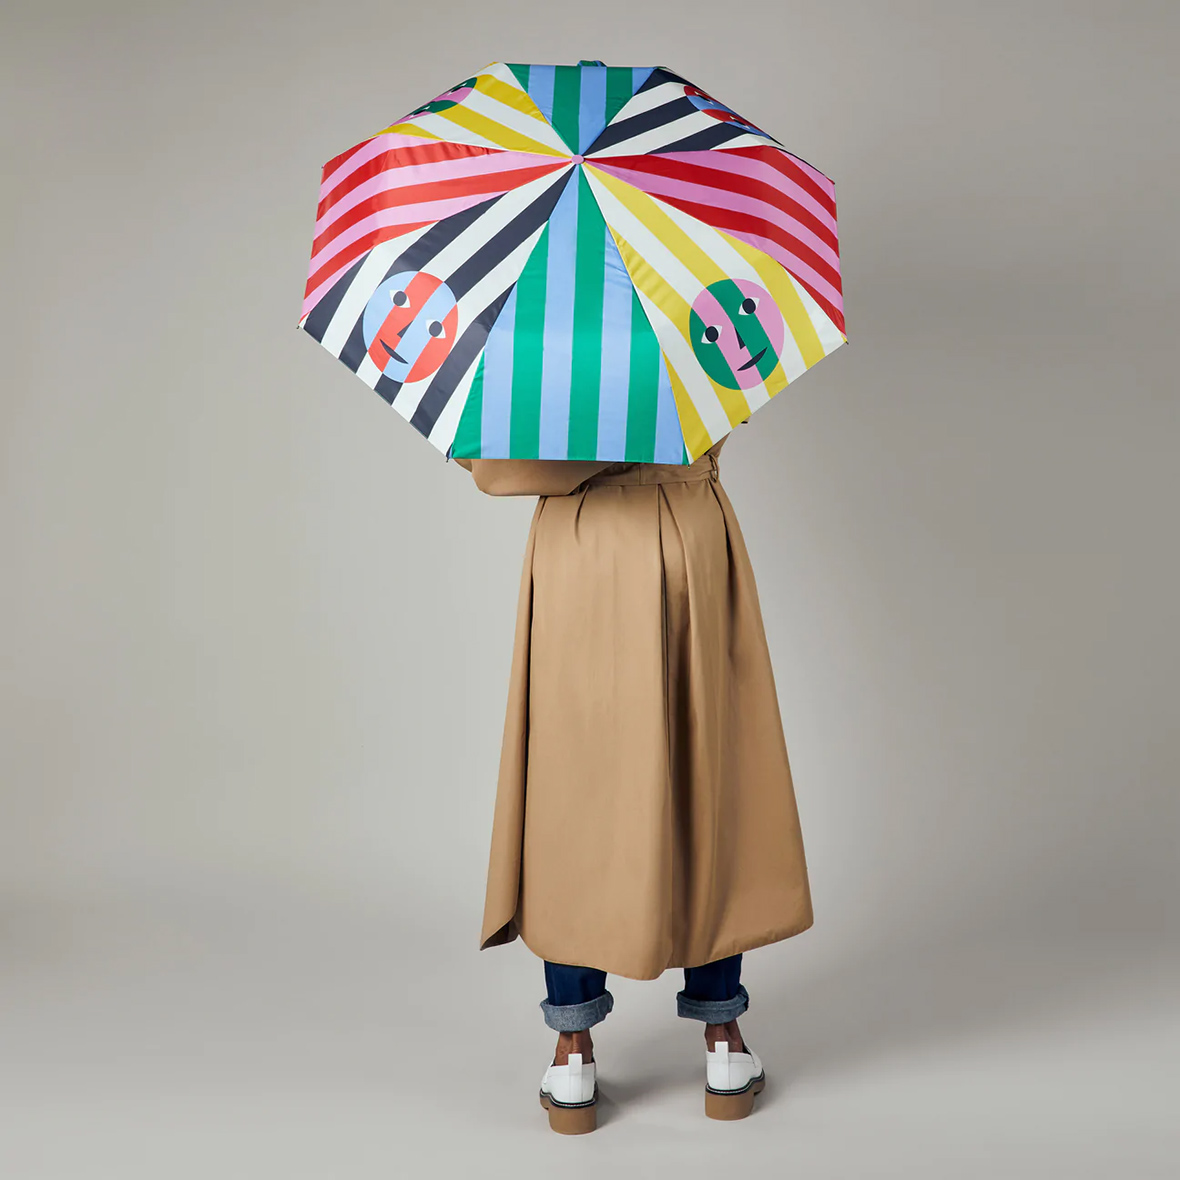 https://design-milk.com/images/2022/11/2022-Gift-Guide-Under-50-Everybody-Umbrella-DUSENDUSEN.jpg